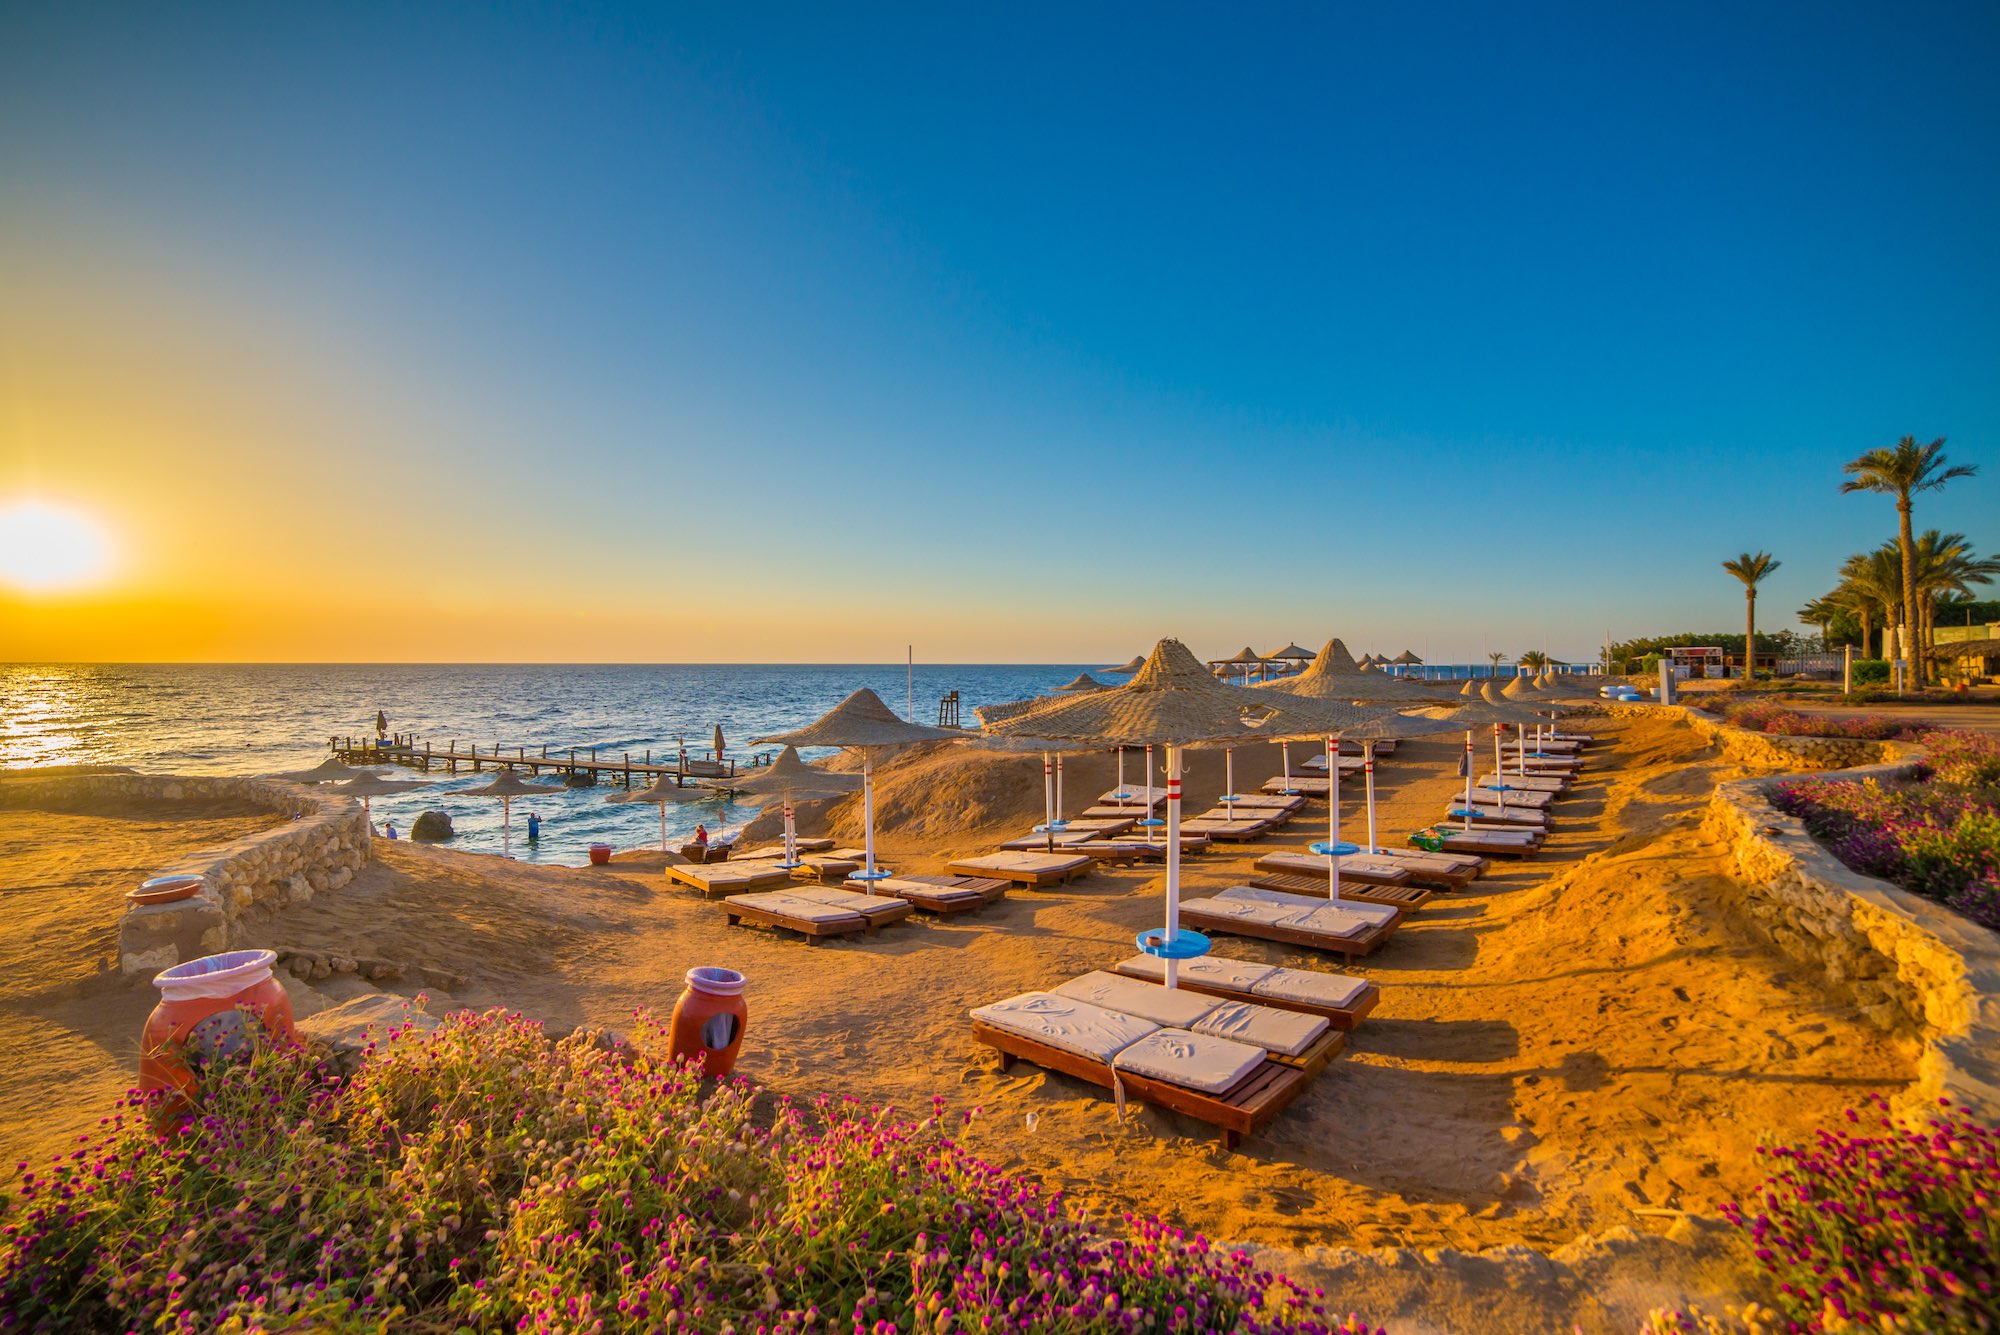 Strand im beliebten Badeort Sharm el Sheikh